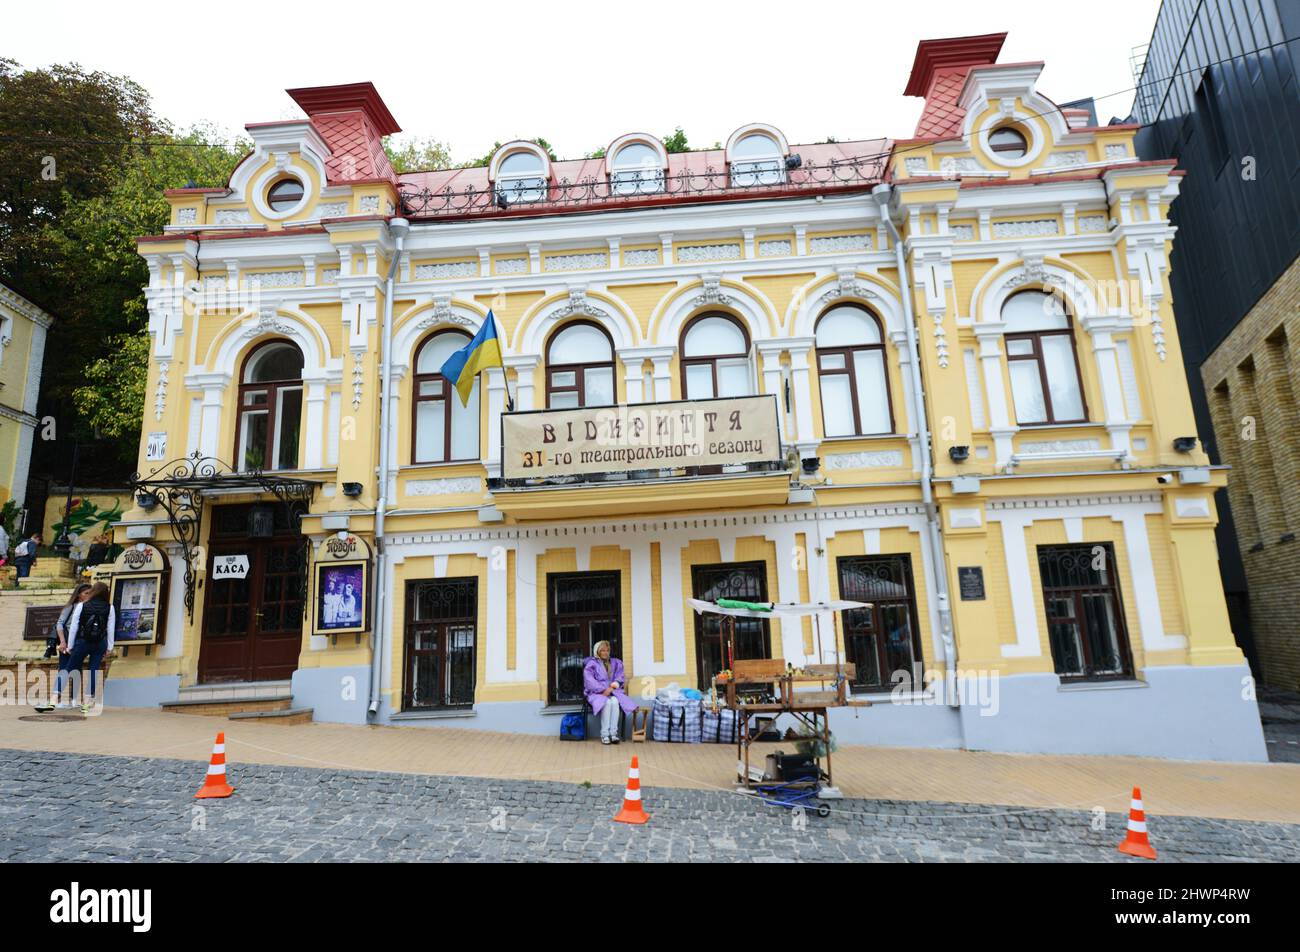 Kyiv academic drama theater on Andriivskyi descent in Kyiv, Ukraine. Stock Photo